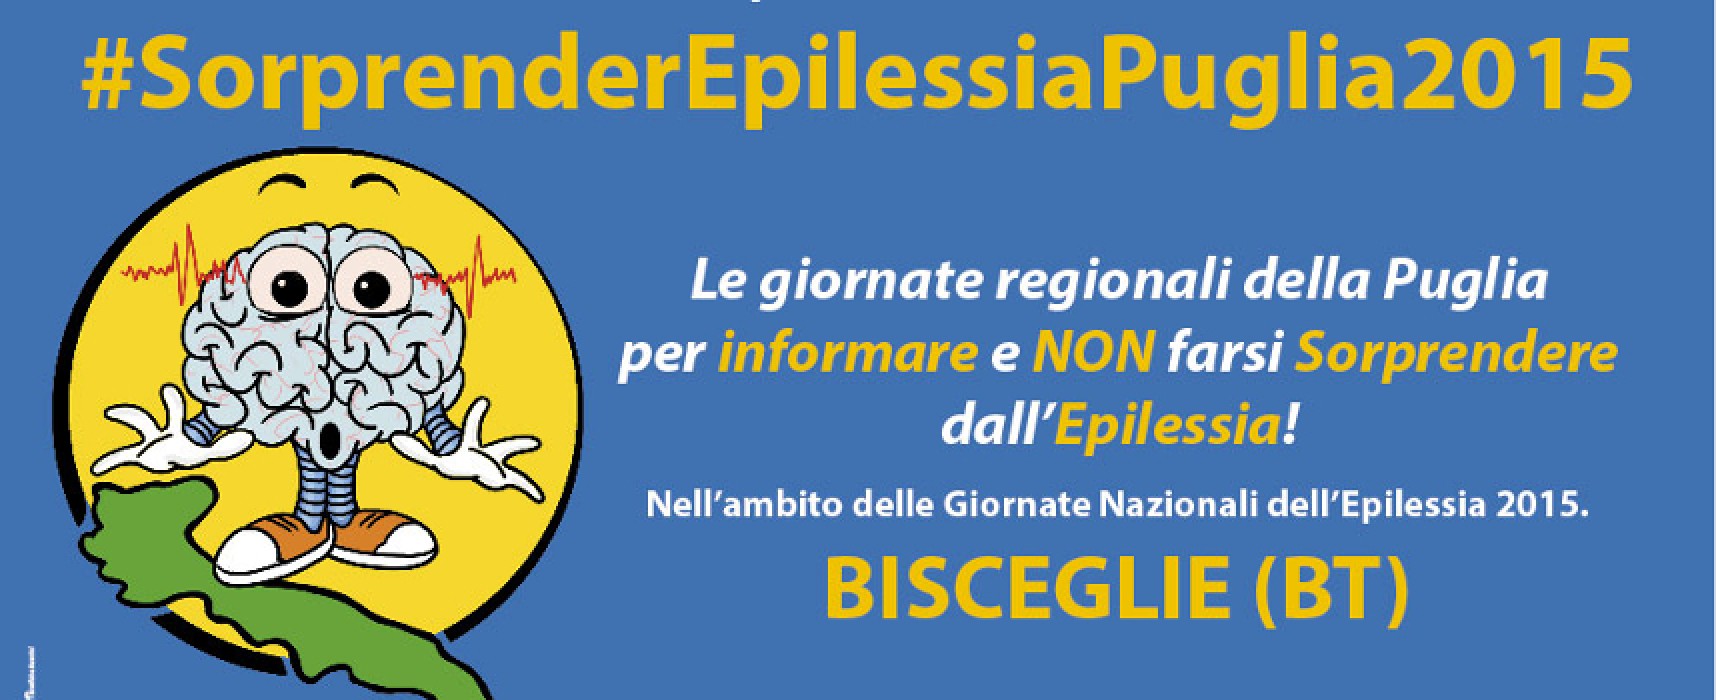 #SorprenderEpilessiaPuglia2015, a Bisceglie le giornate regionali per la sensibilizzazione sull’epilessia